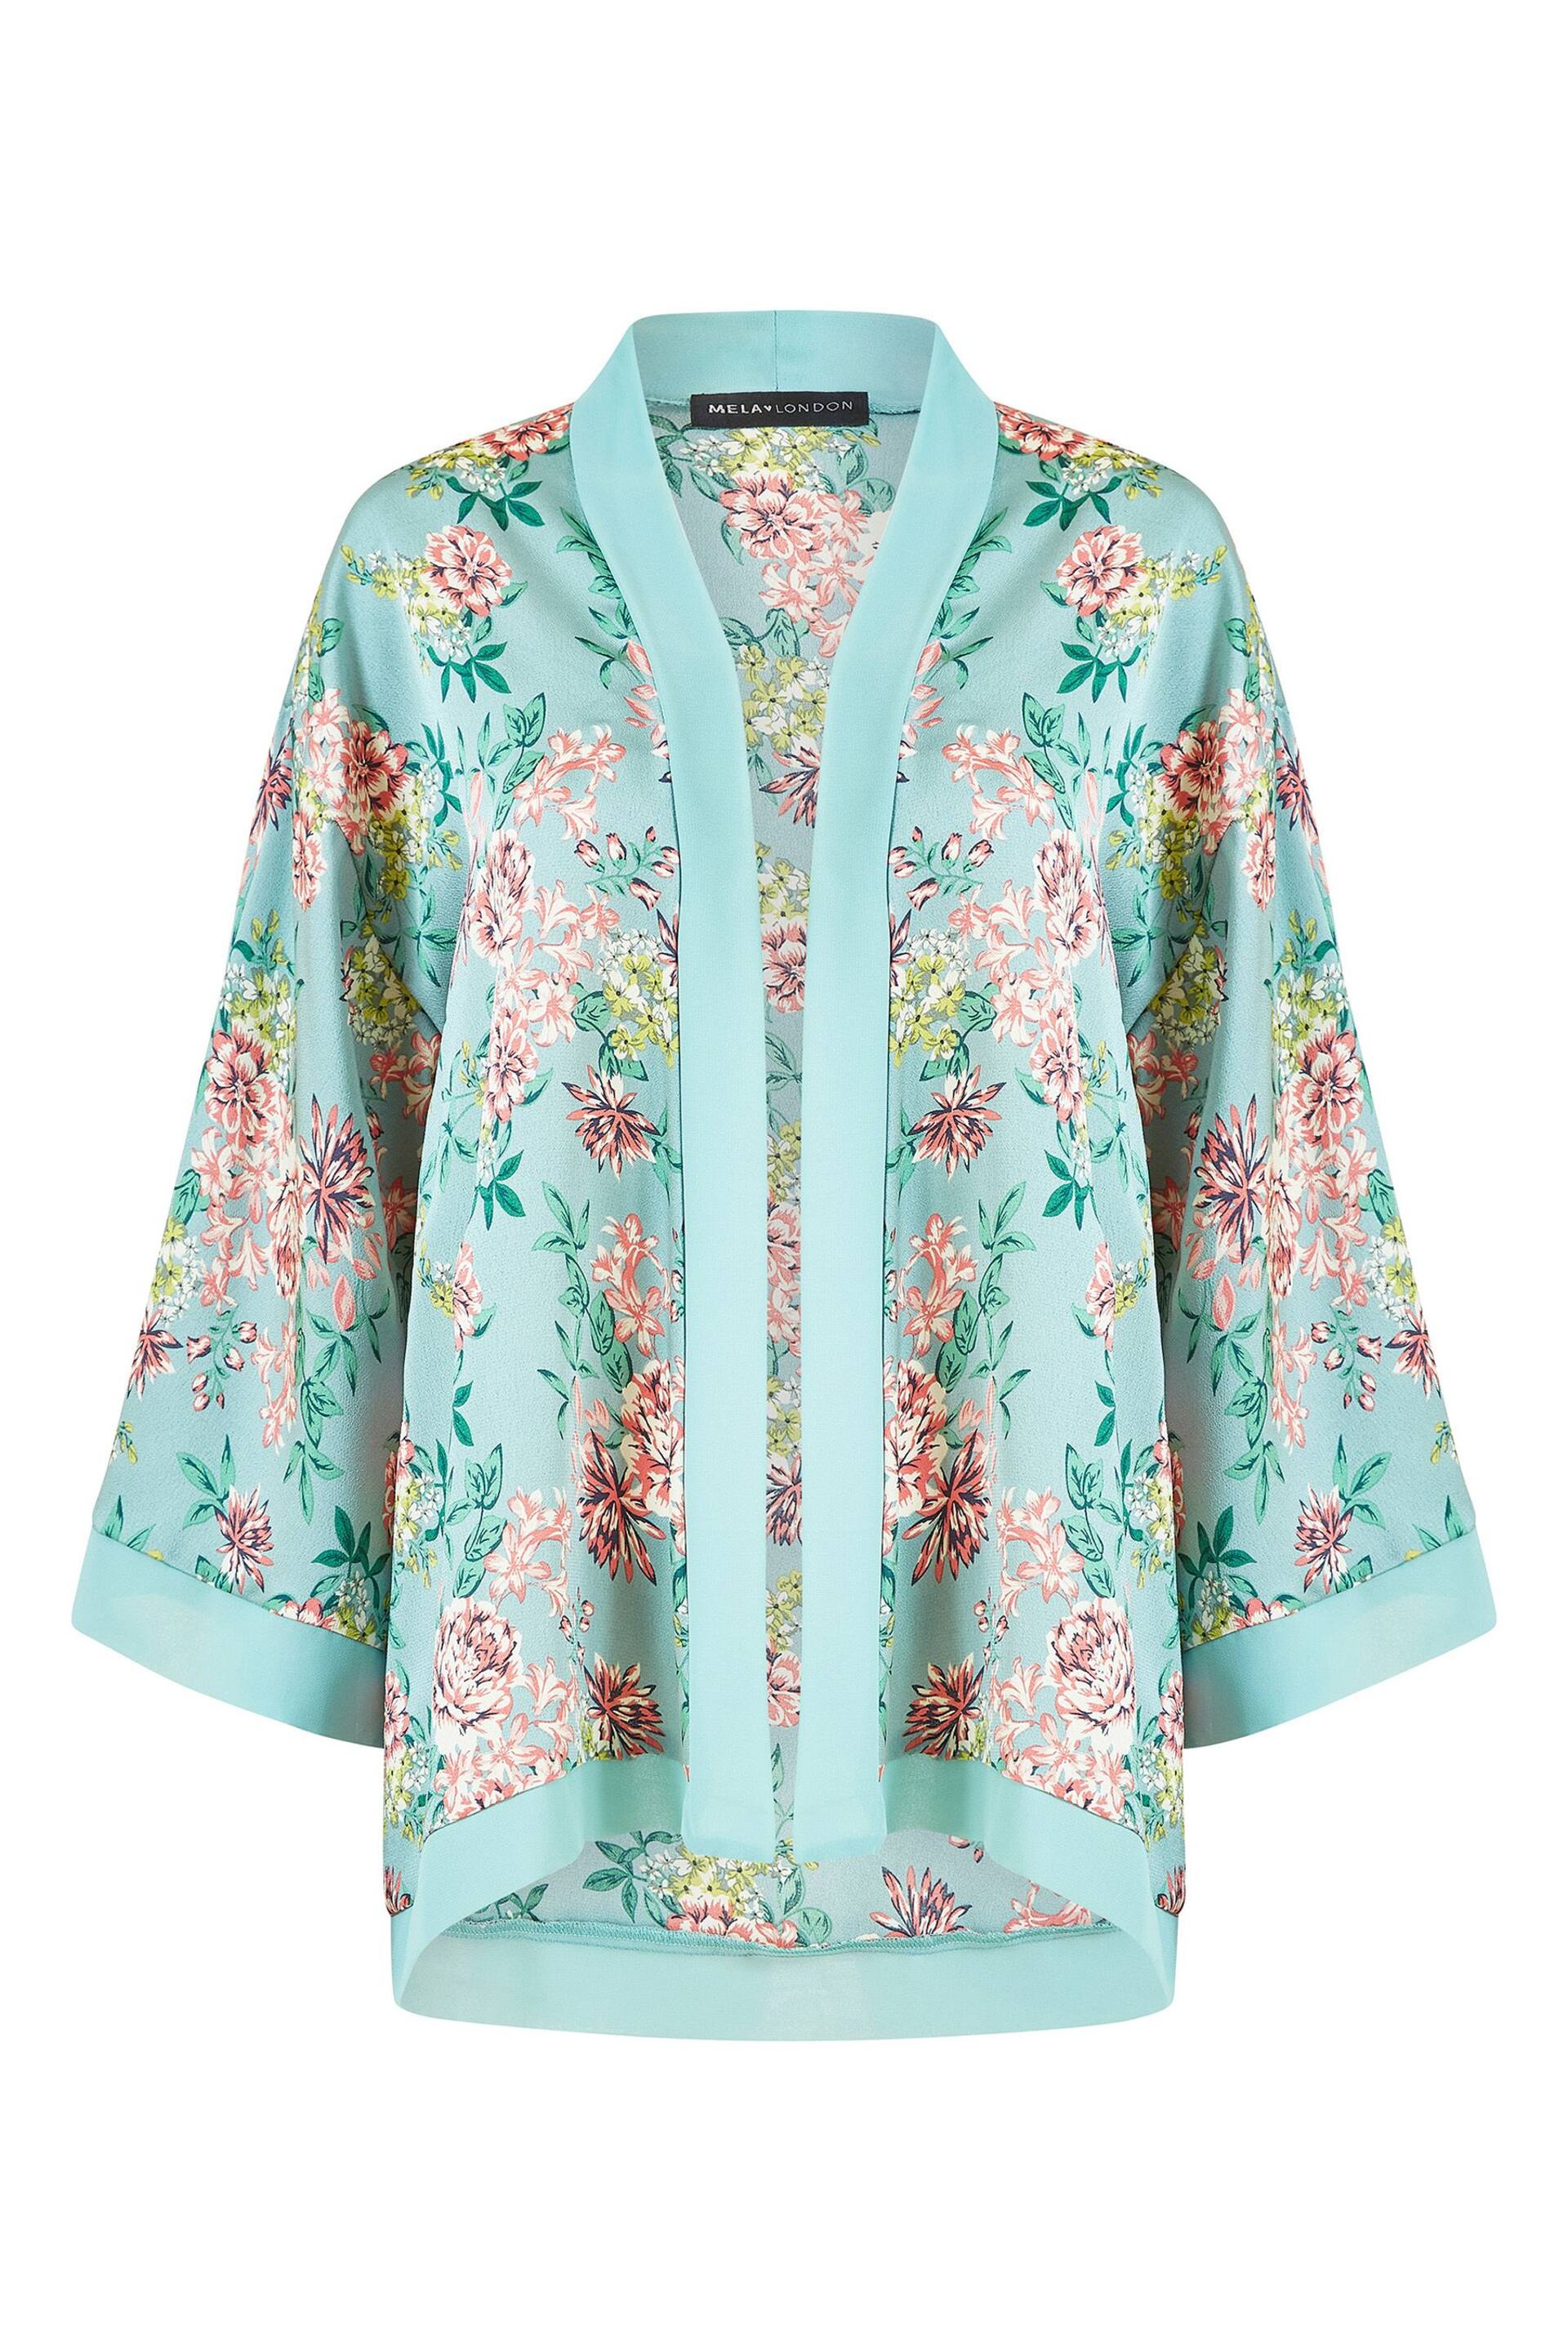 Mela Green Floral Satin Kimono Jacket - Image 4 of 4